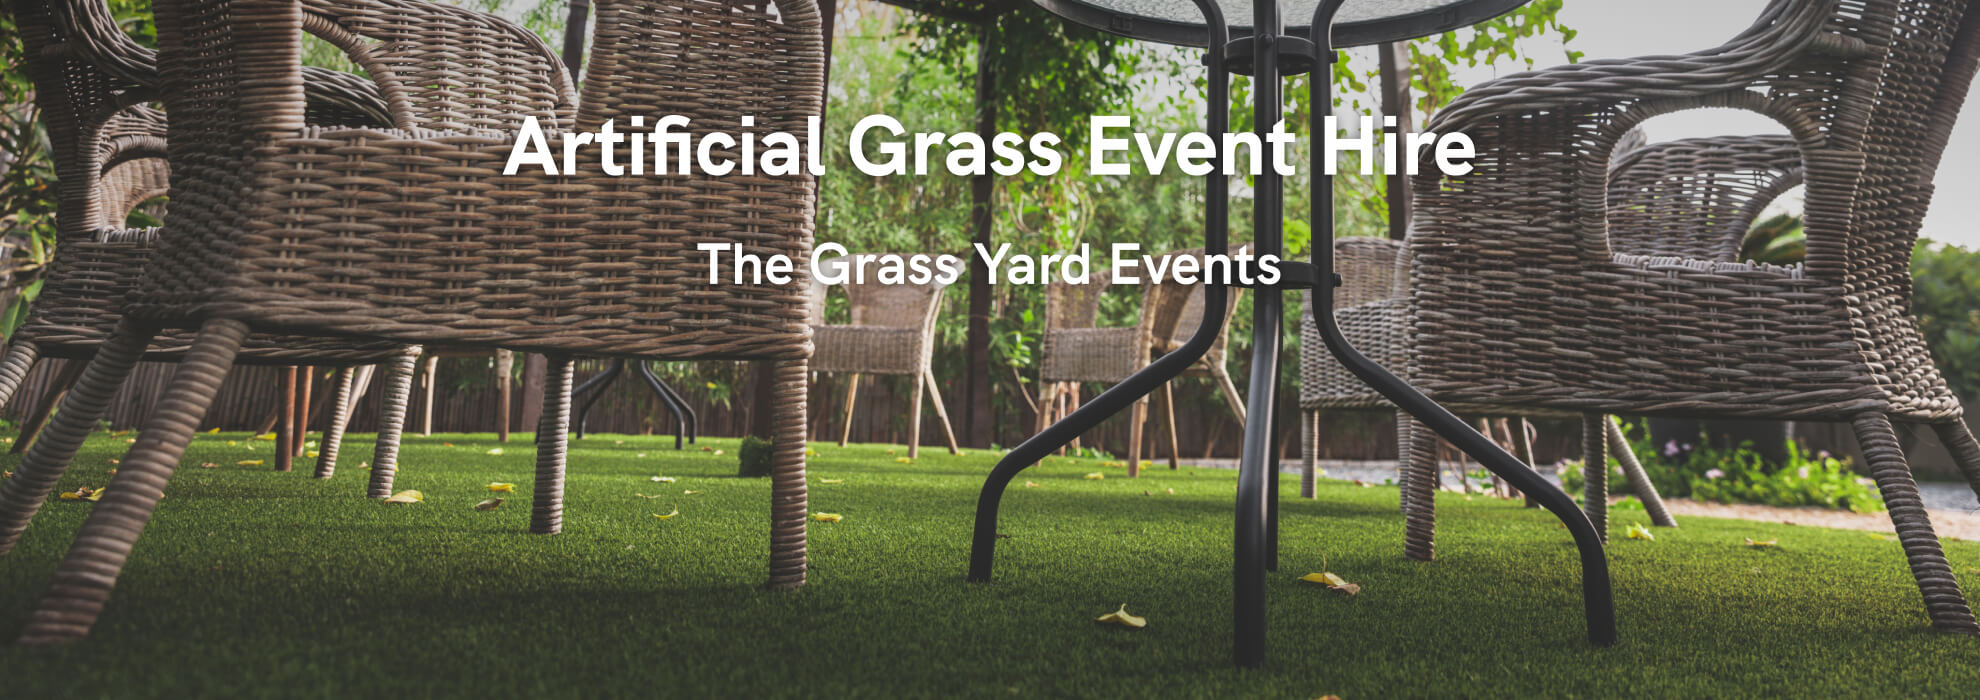 the grass yard artificial grass event hire